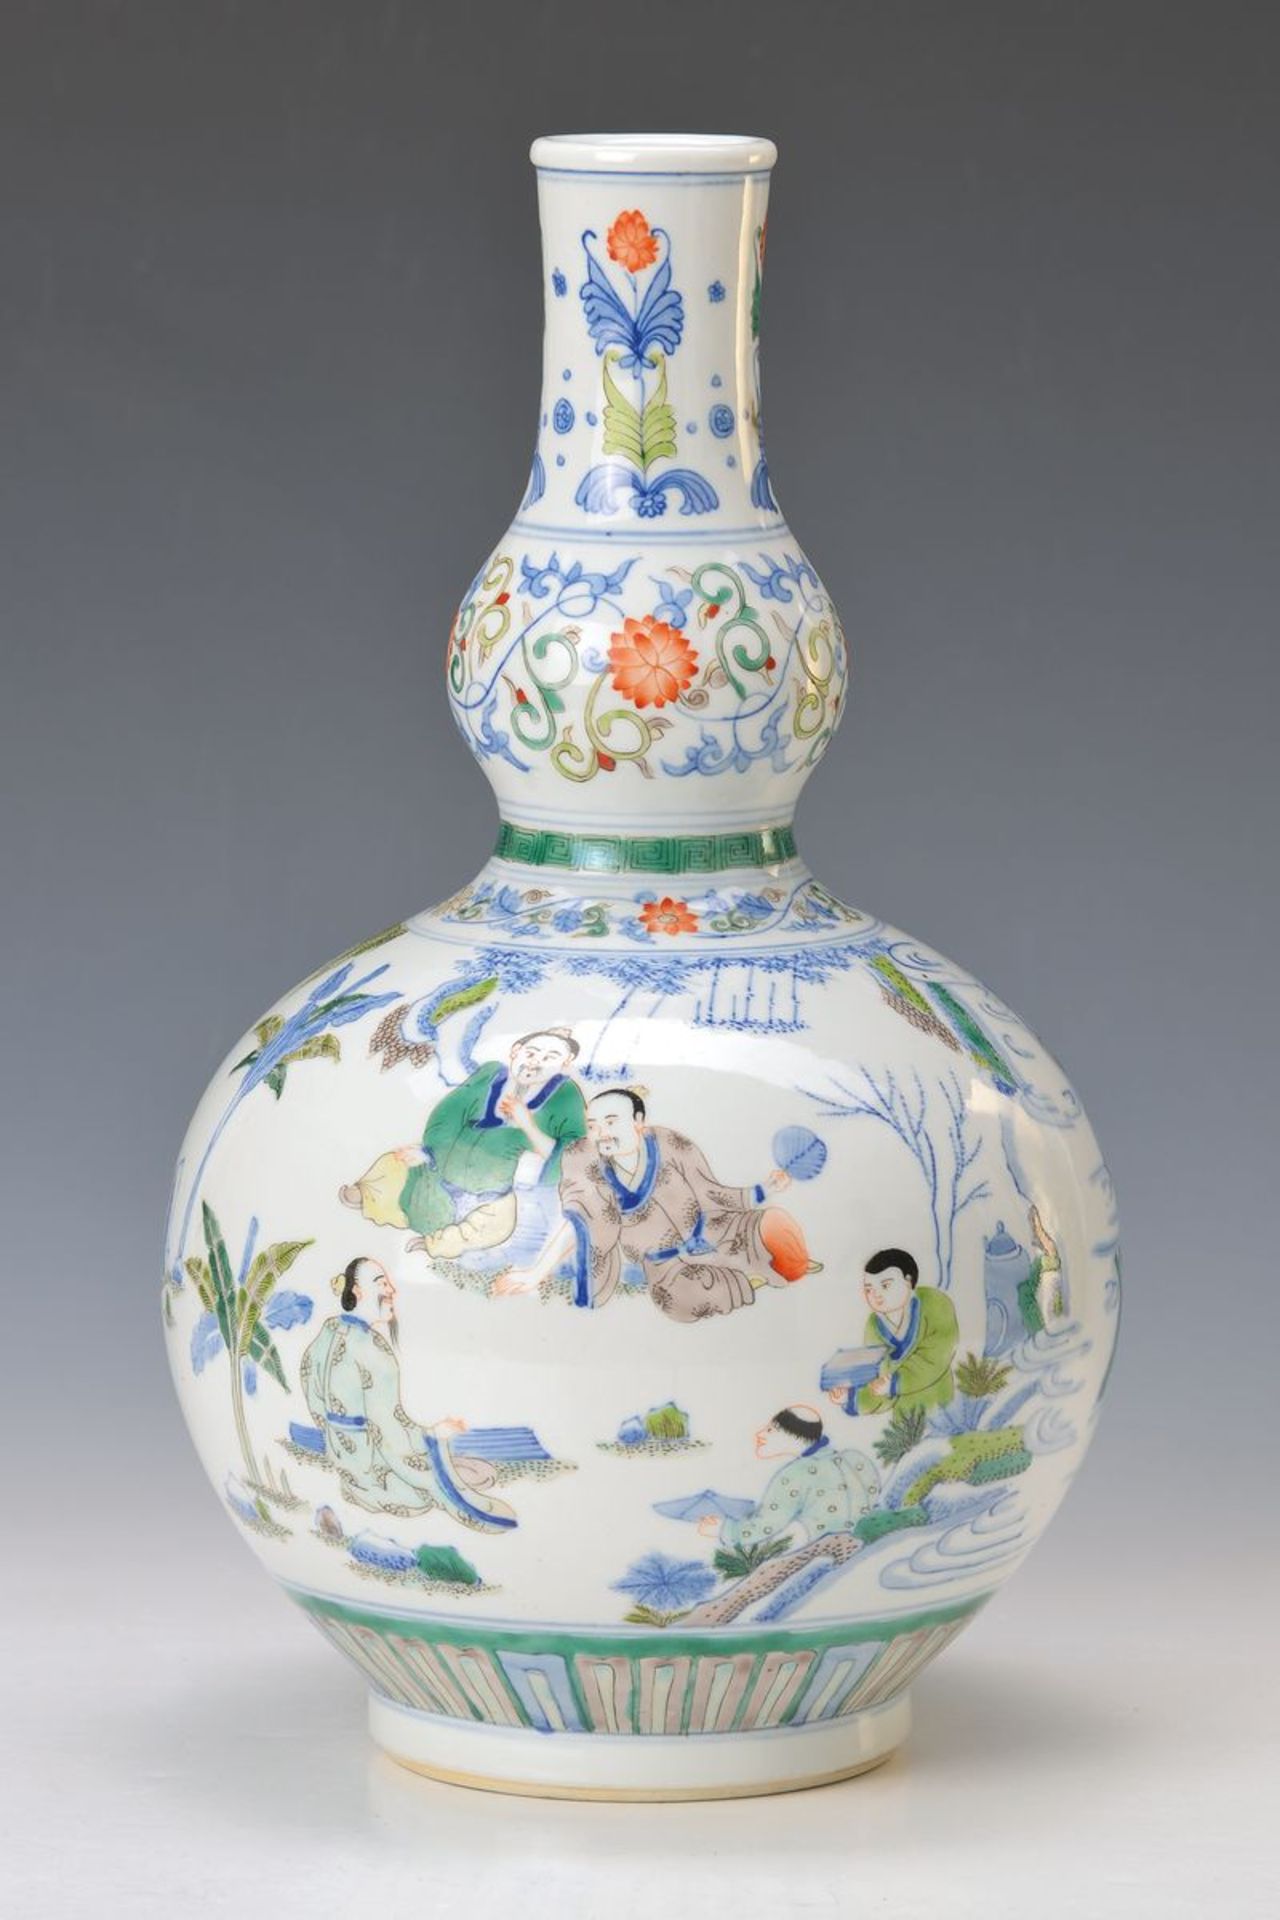 Vase, China, nach Vorbild der Kangxi Periode, Porzellan, sog. grüne Familie, leicht gräulich-